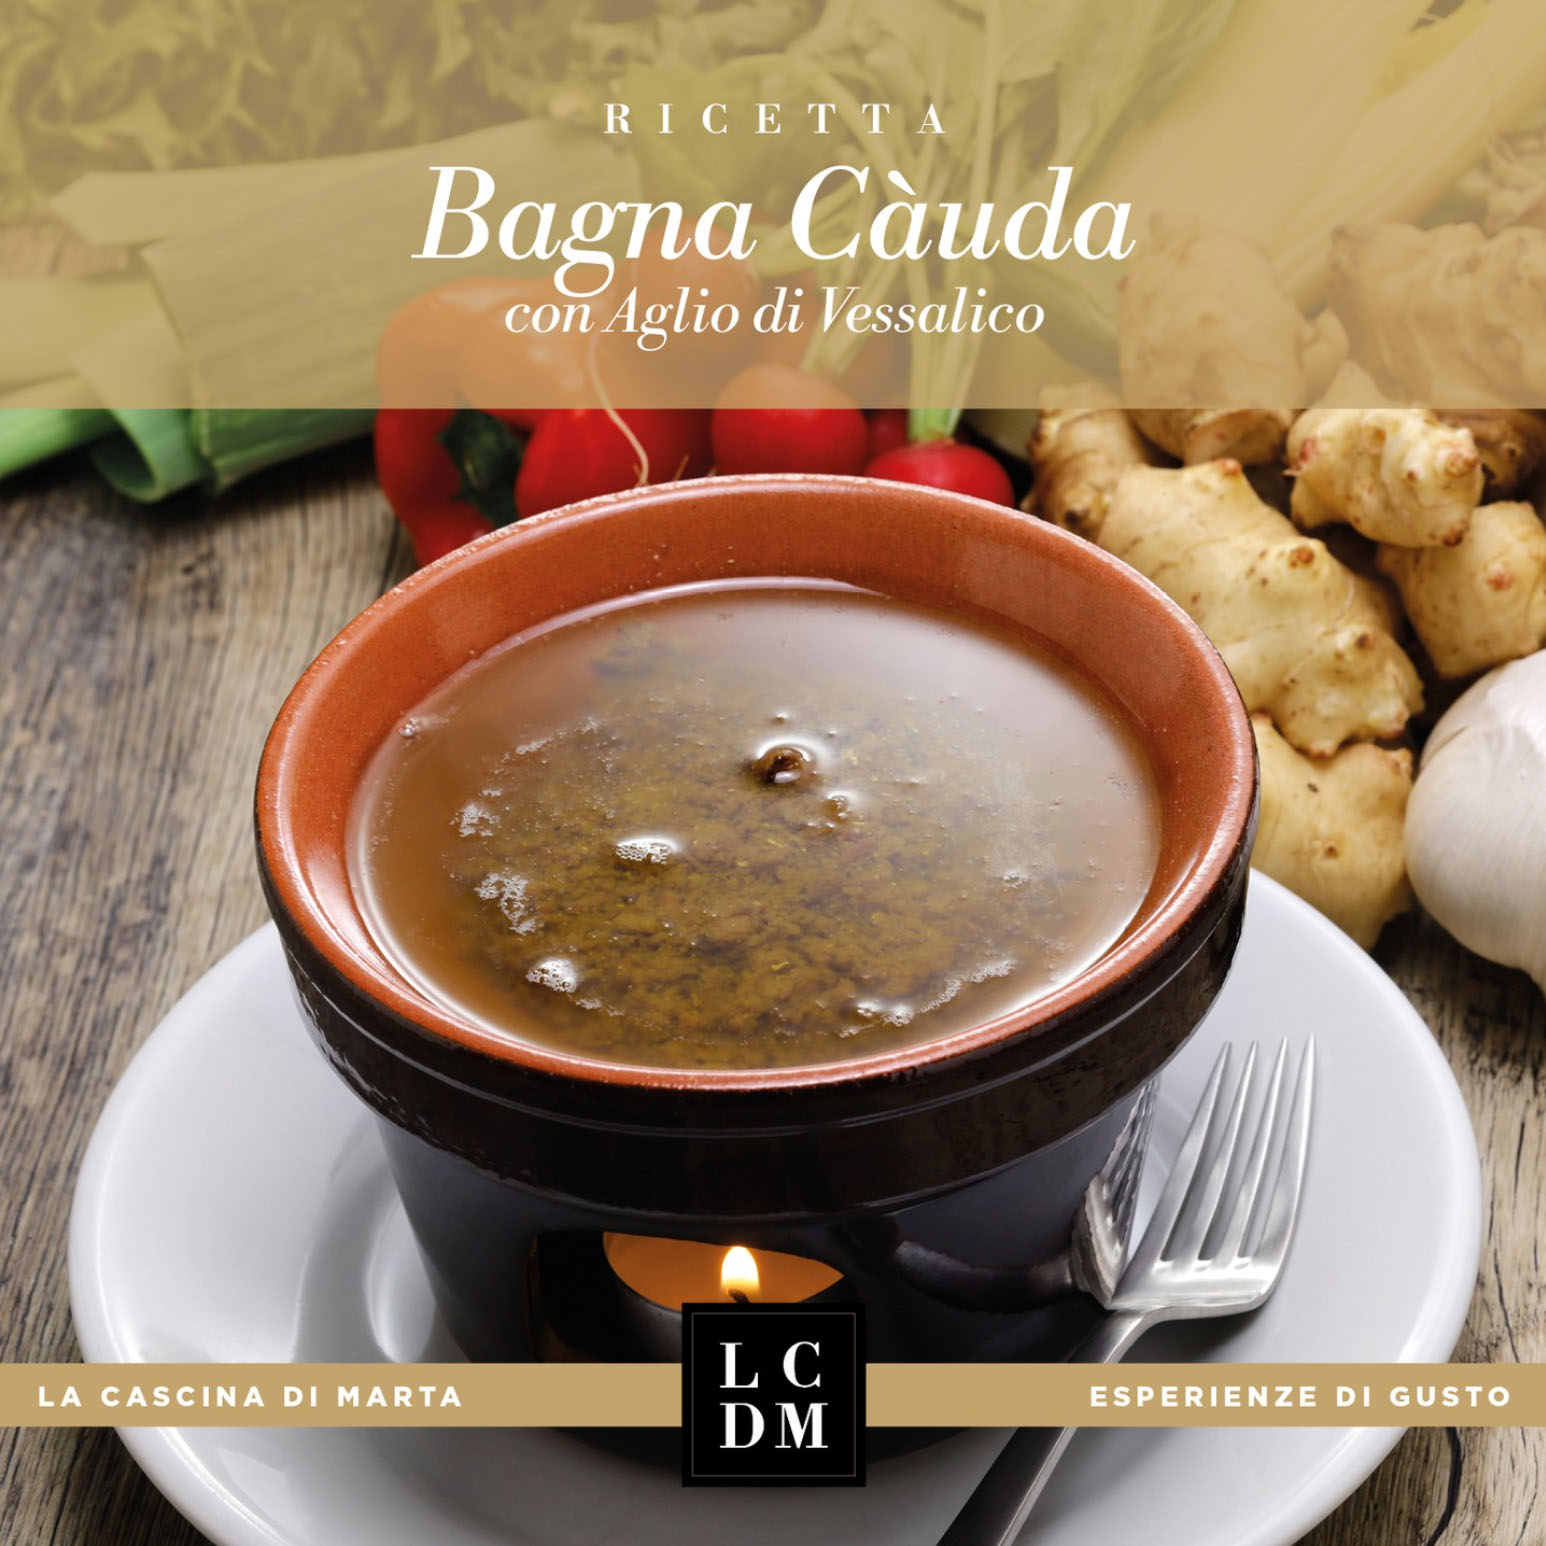 Bagna Càuda with Vessalico garlic